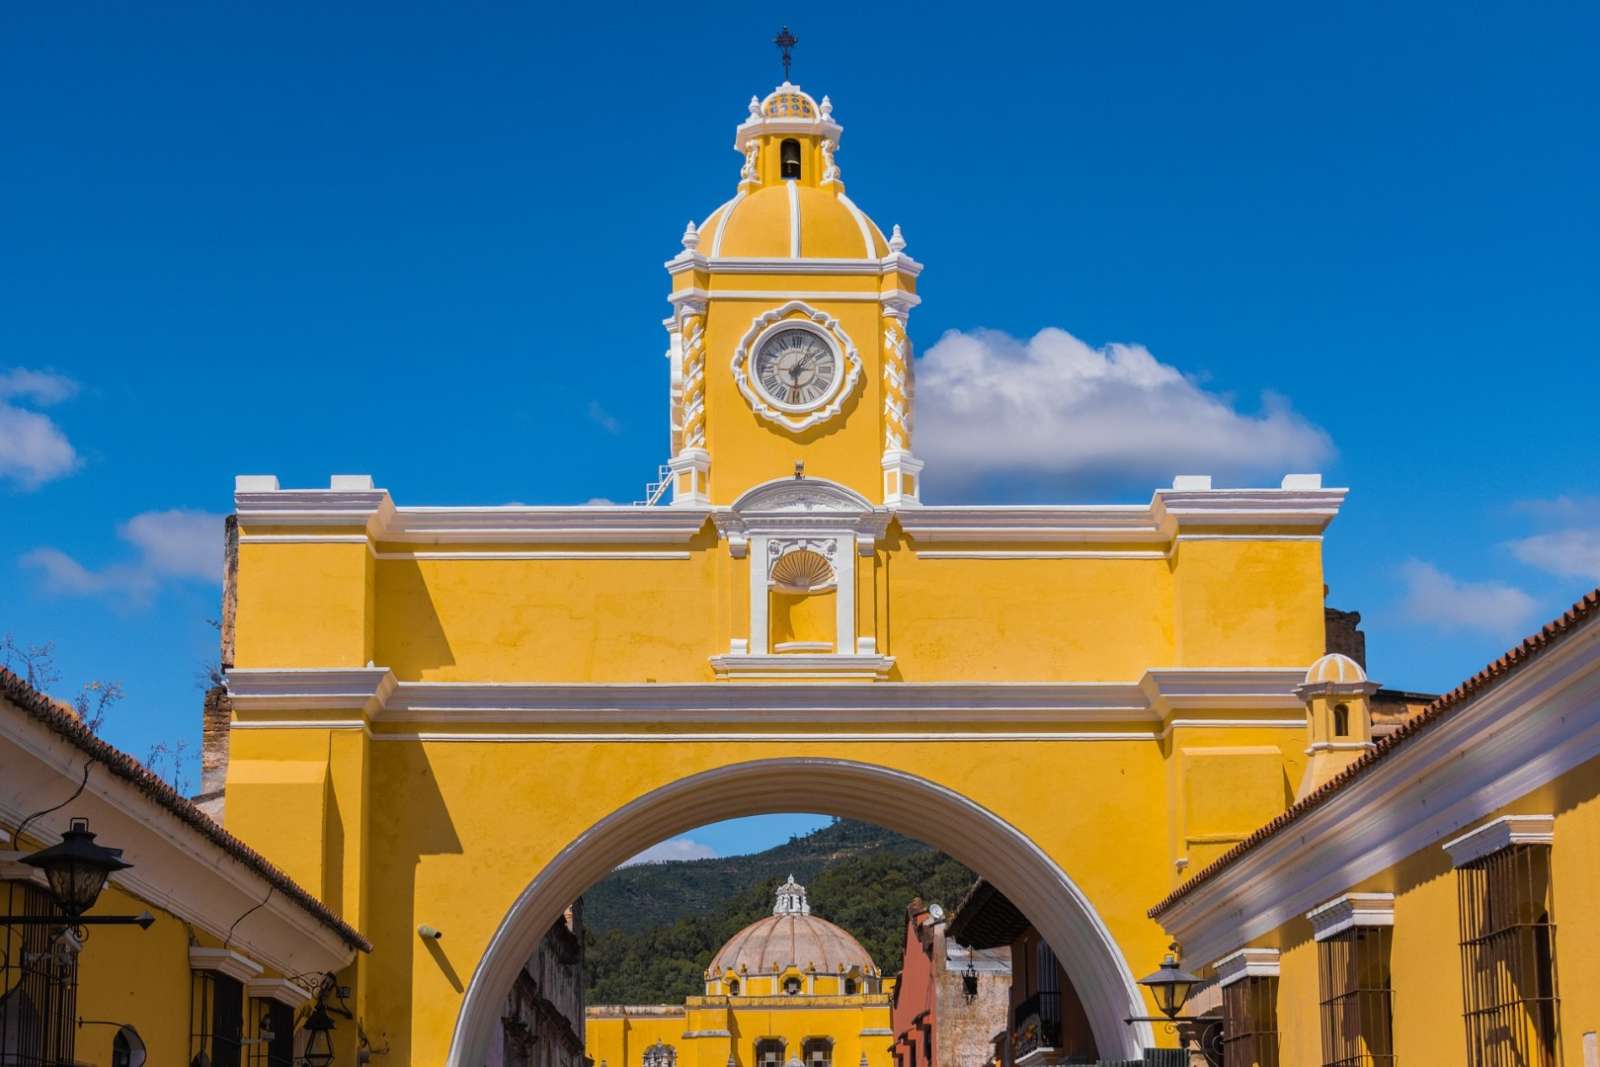 Arco in Antigua, Guatemala